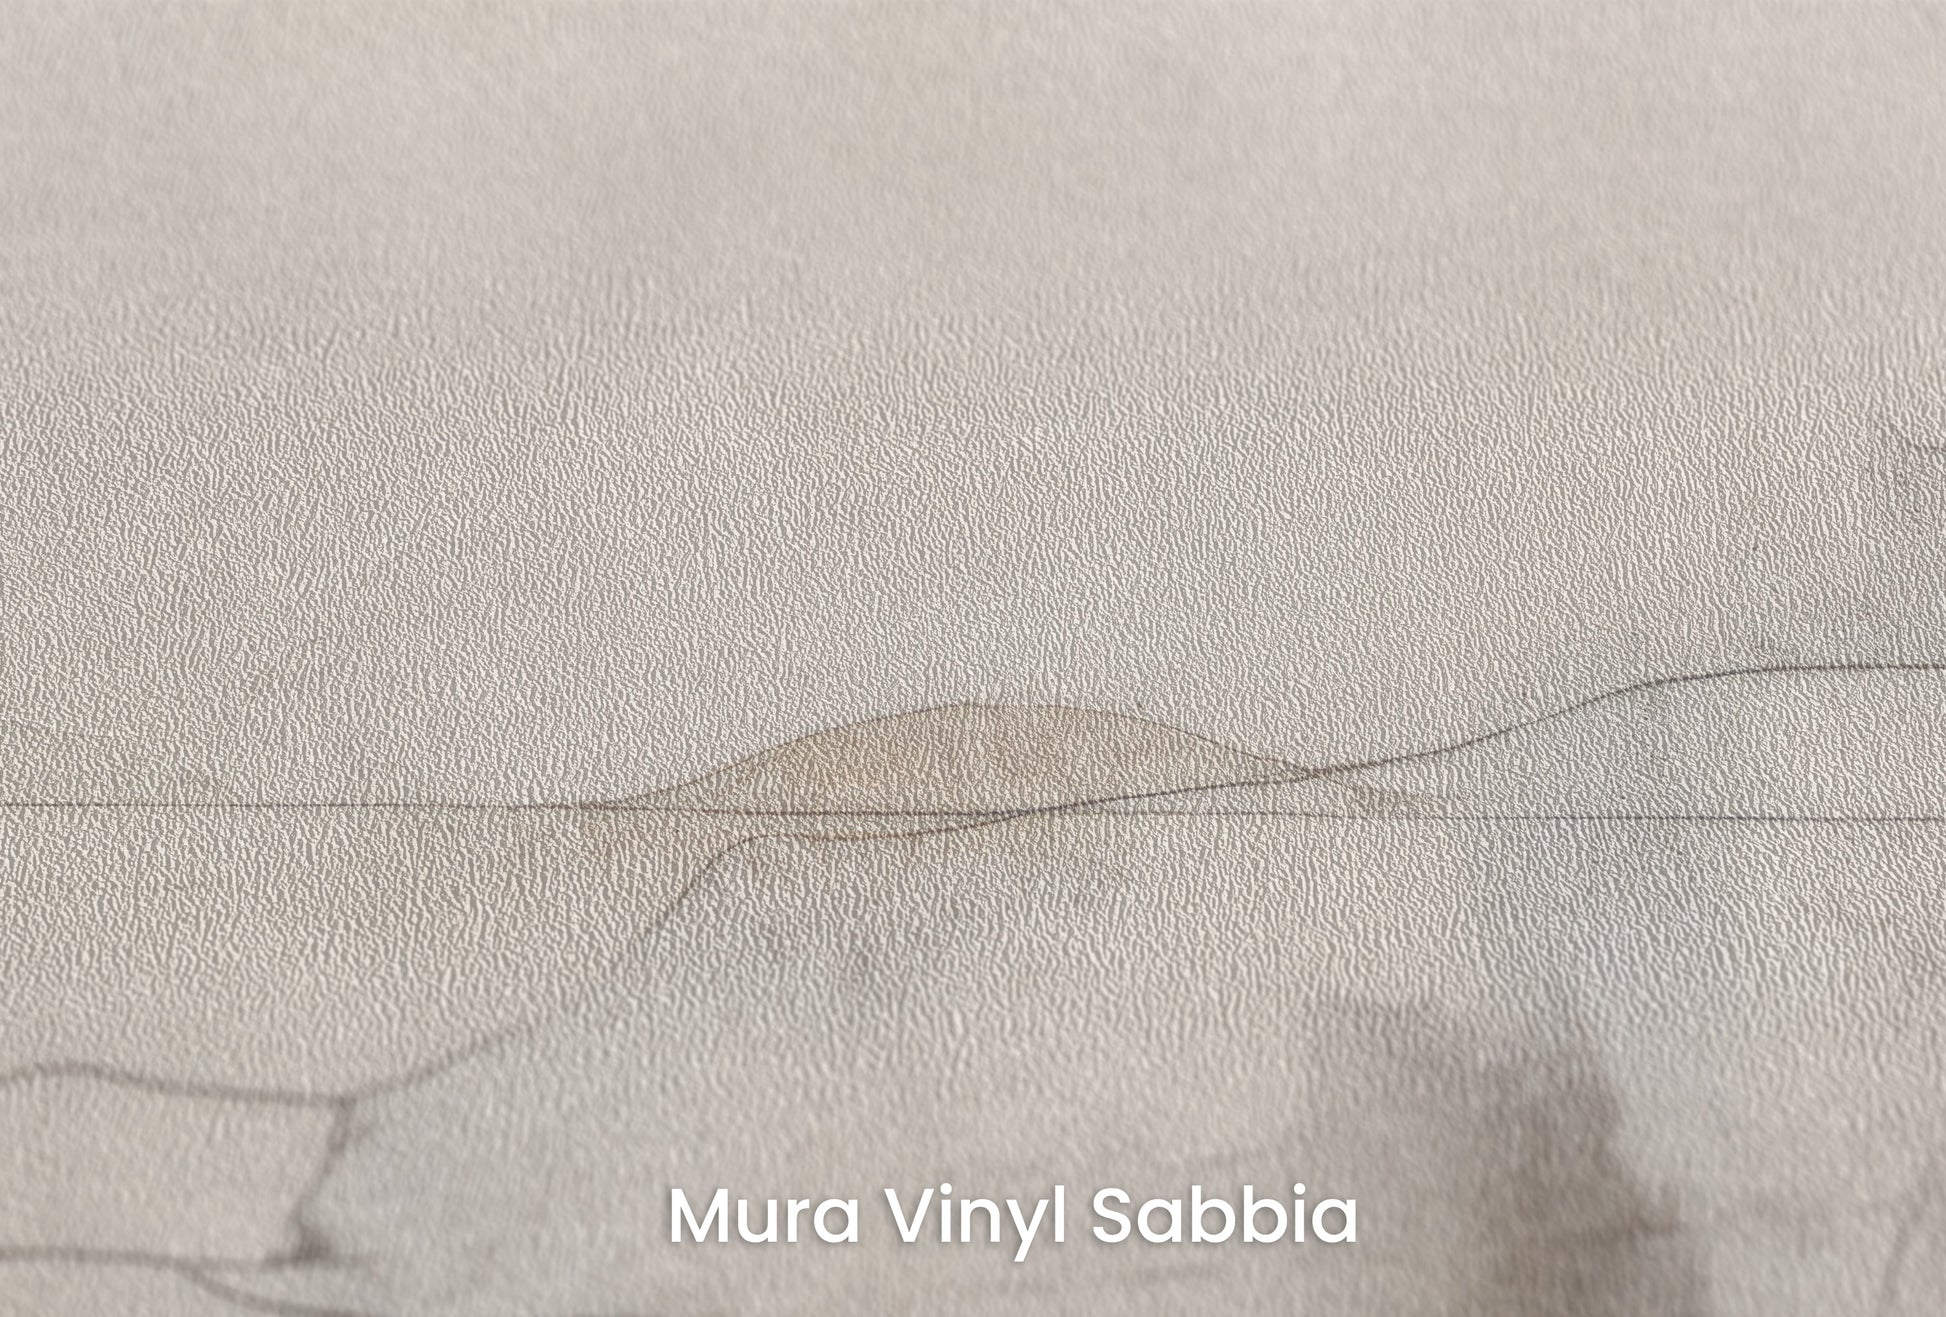 Zbliżenie na artystyczną fototapetę o nazwie ETHEREAL CARTOGRAPHY na podłożu Mura Vinyl Sabbia struktura grubego ziarna piasku.